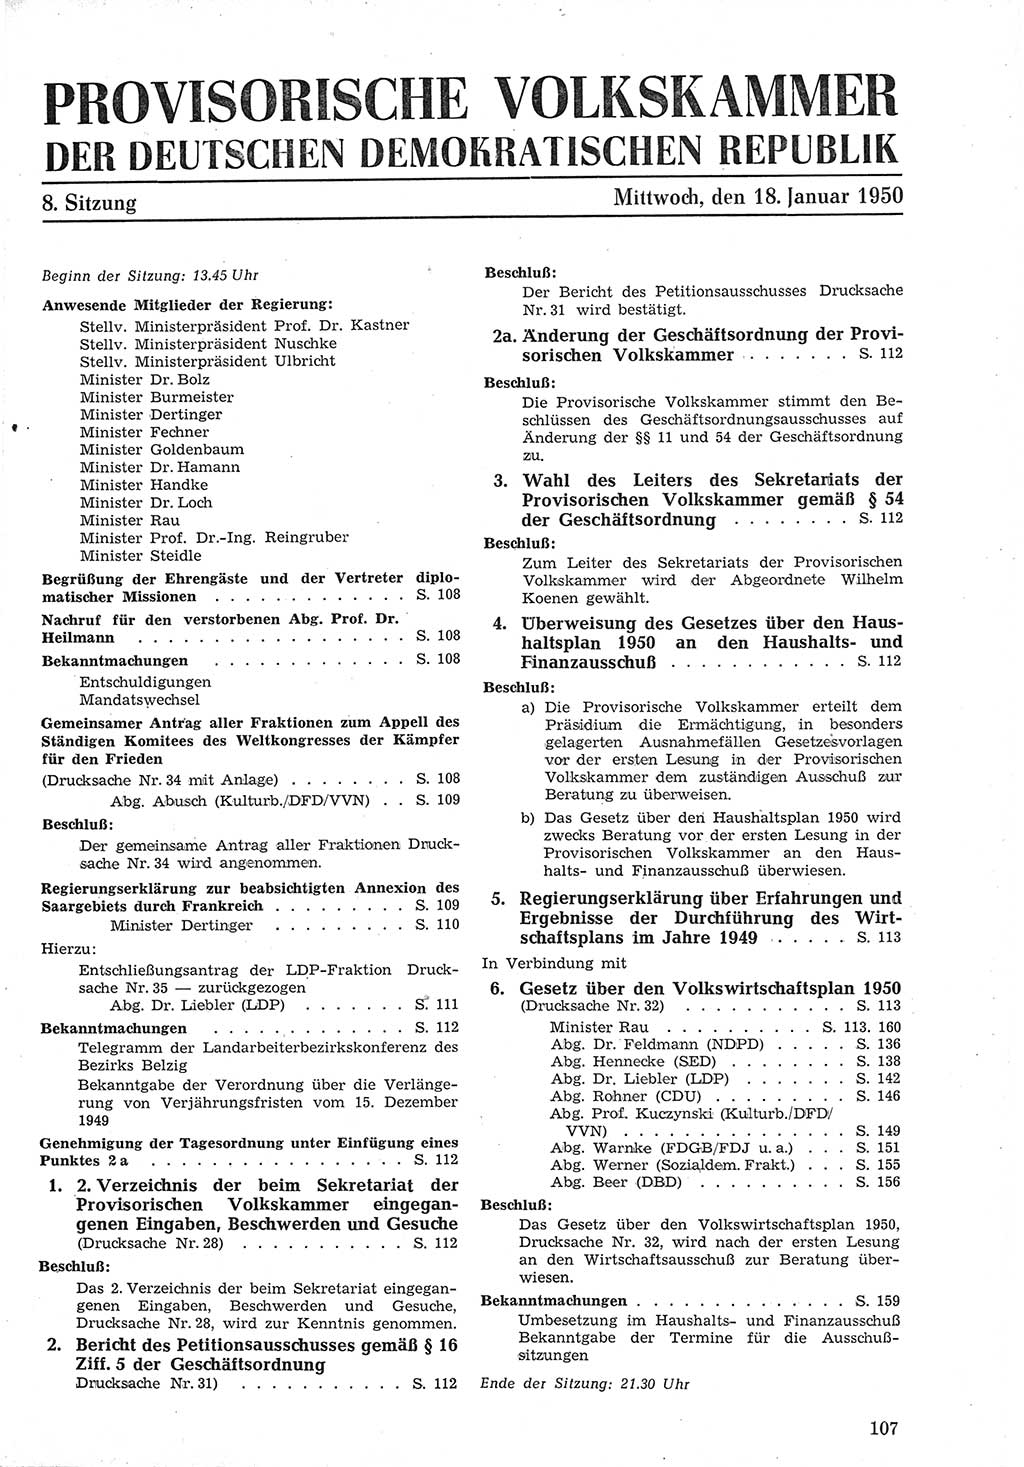 Provisorische Volkskammer (VK) der Deutschen Demokratischen Republik (DDR) 1949-1950, Dokument 119 (Prov. VK DDR 1949-1950, Dok. 119)